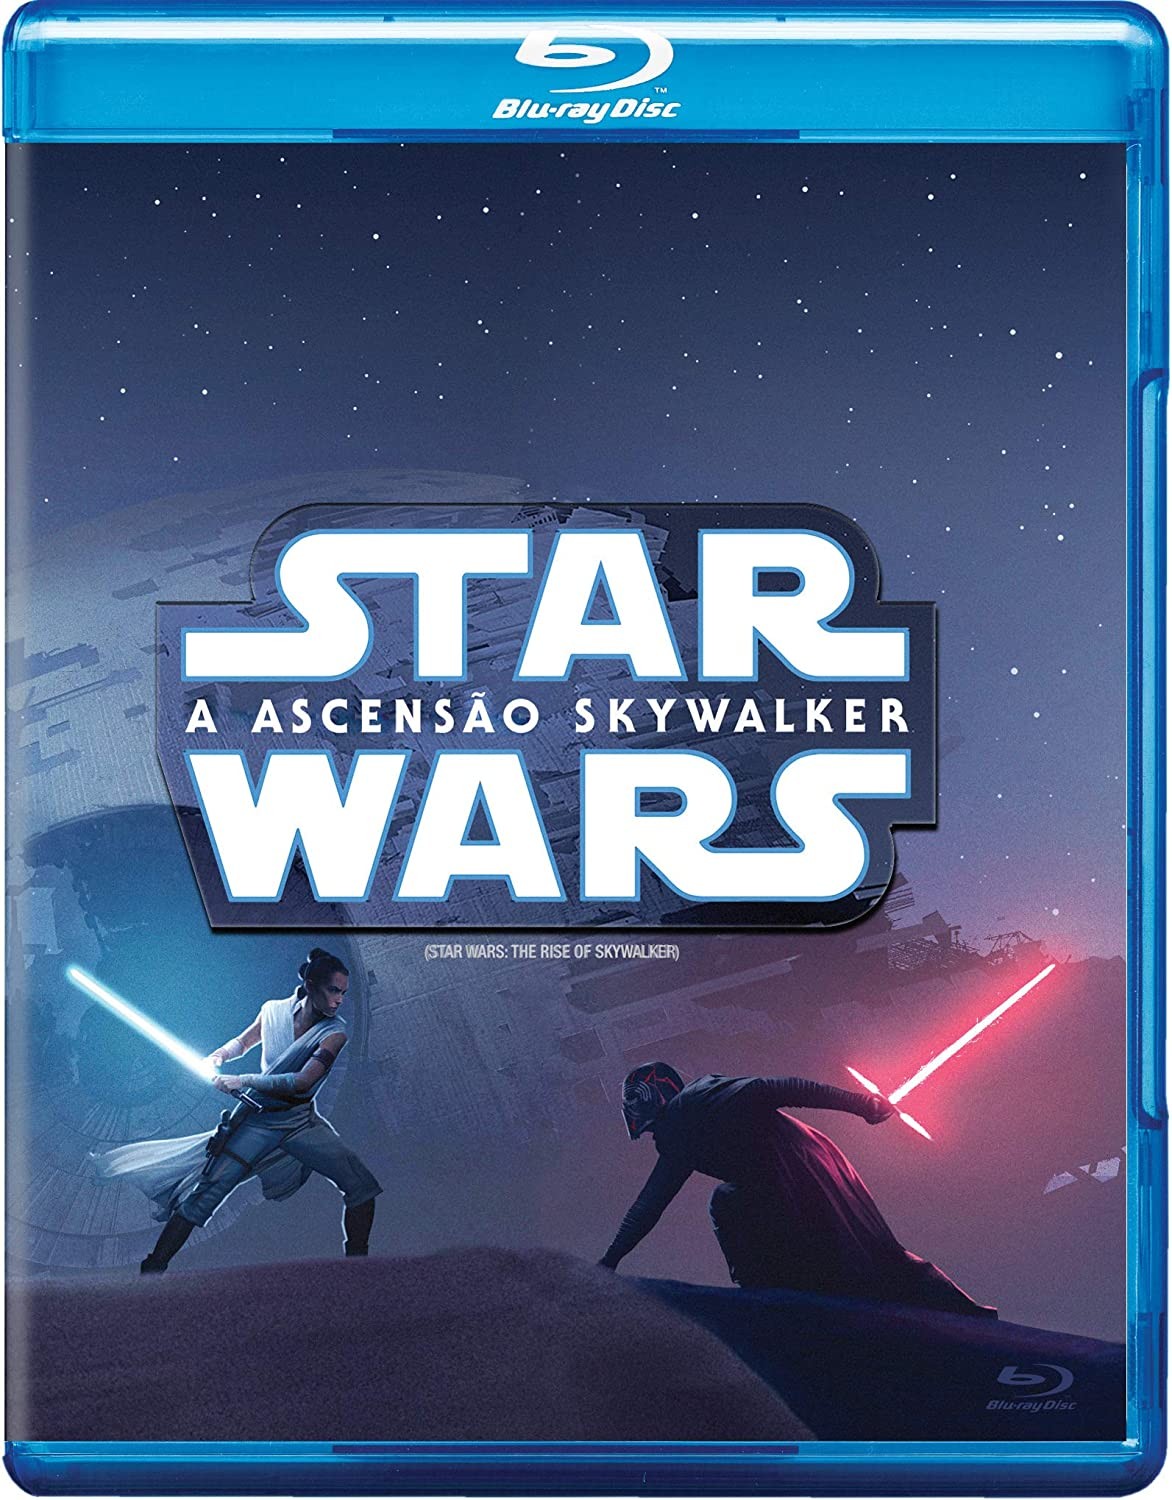 Star Wars: A Ascensão Skywalker é um clássico de 2019 (Foto: Divulgação/Amazon)